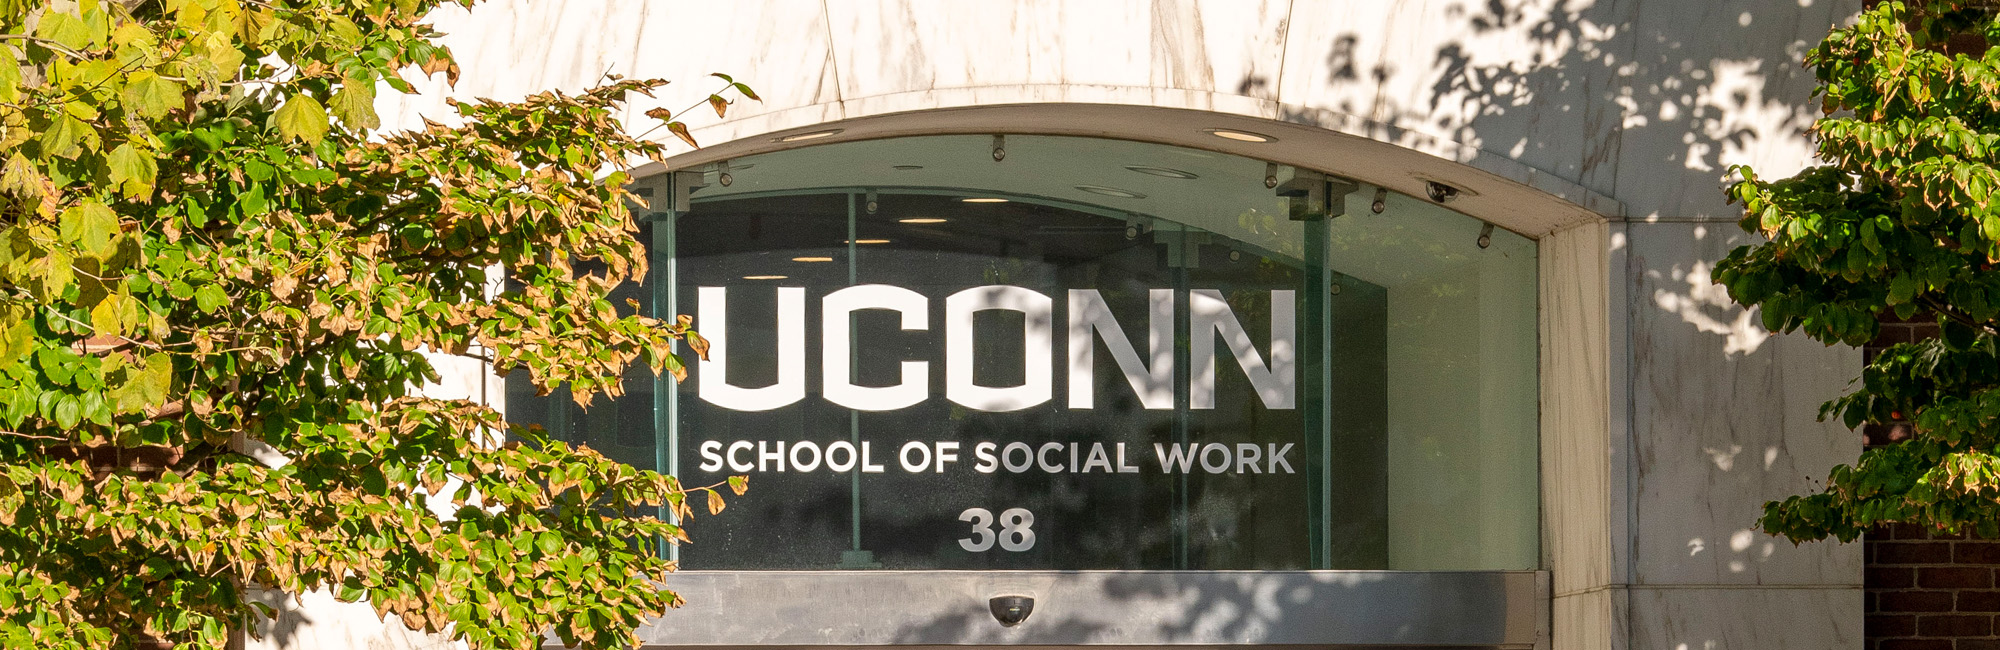 UConn Social Work building signage